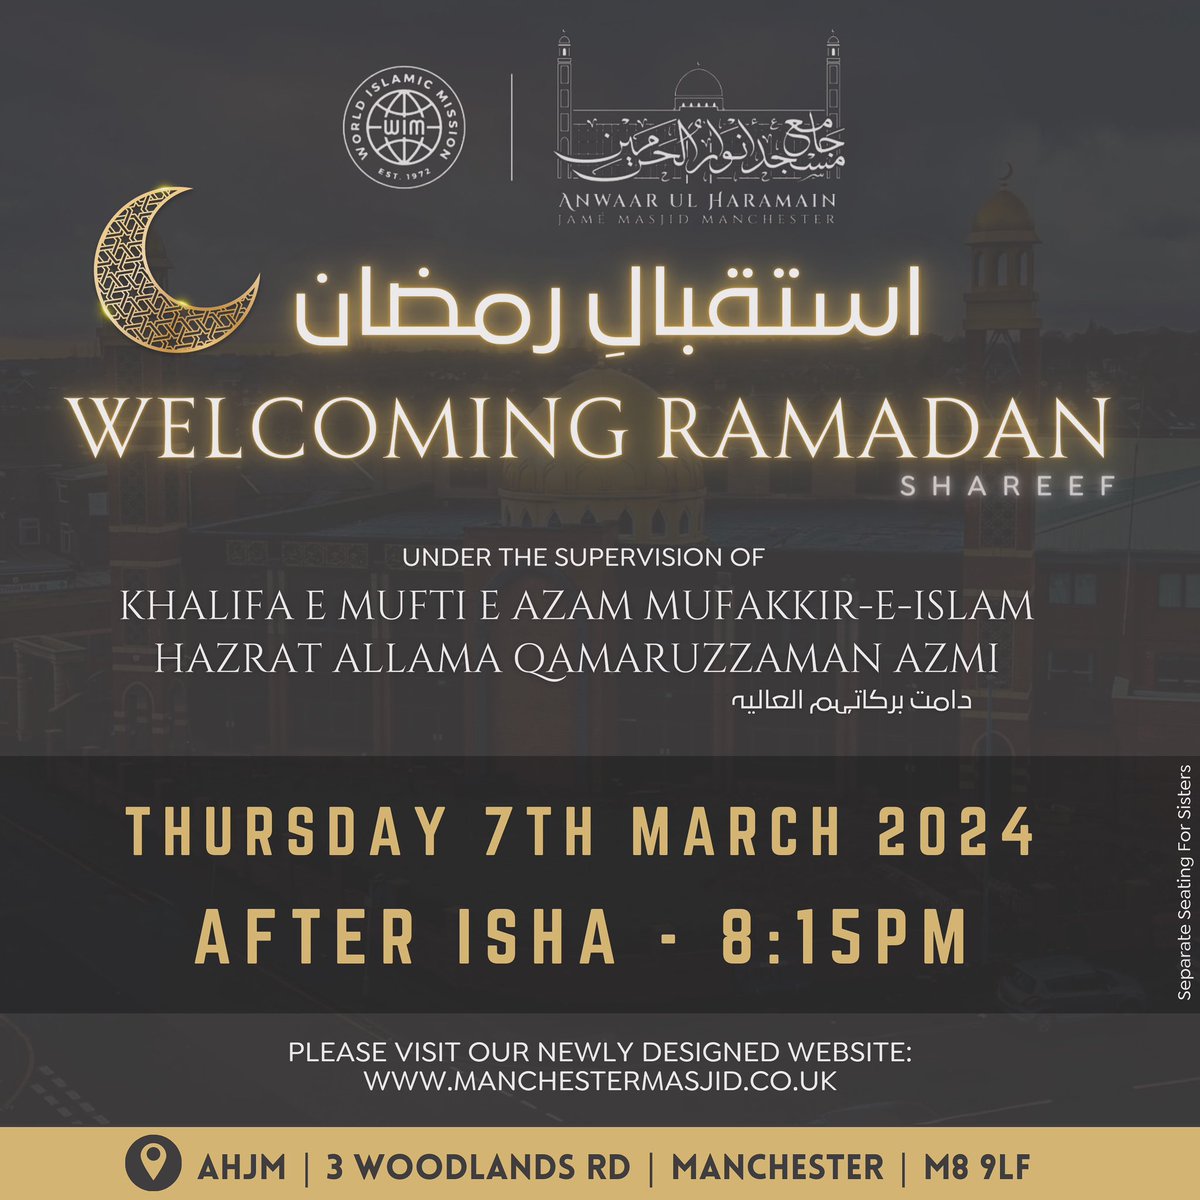 Next Thursday: WELCOMING RAMADAN JOIN US at 8:15pm (Isha) ان شاء الله